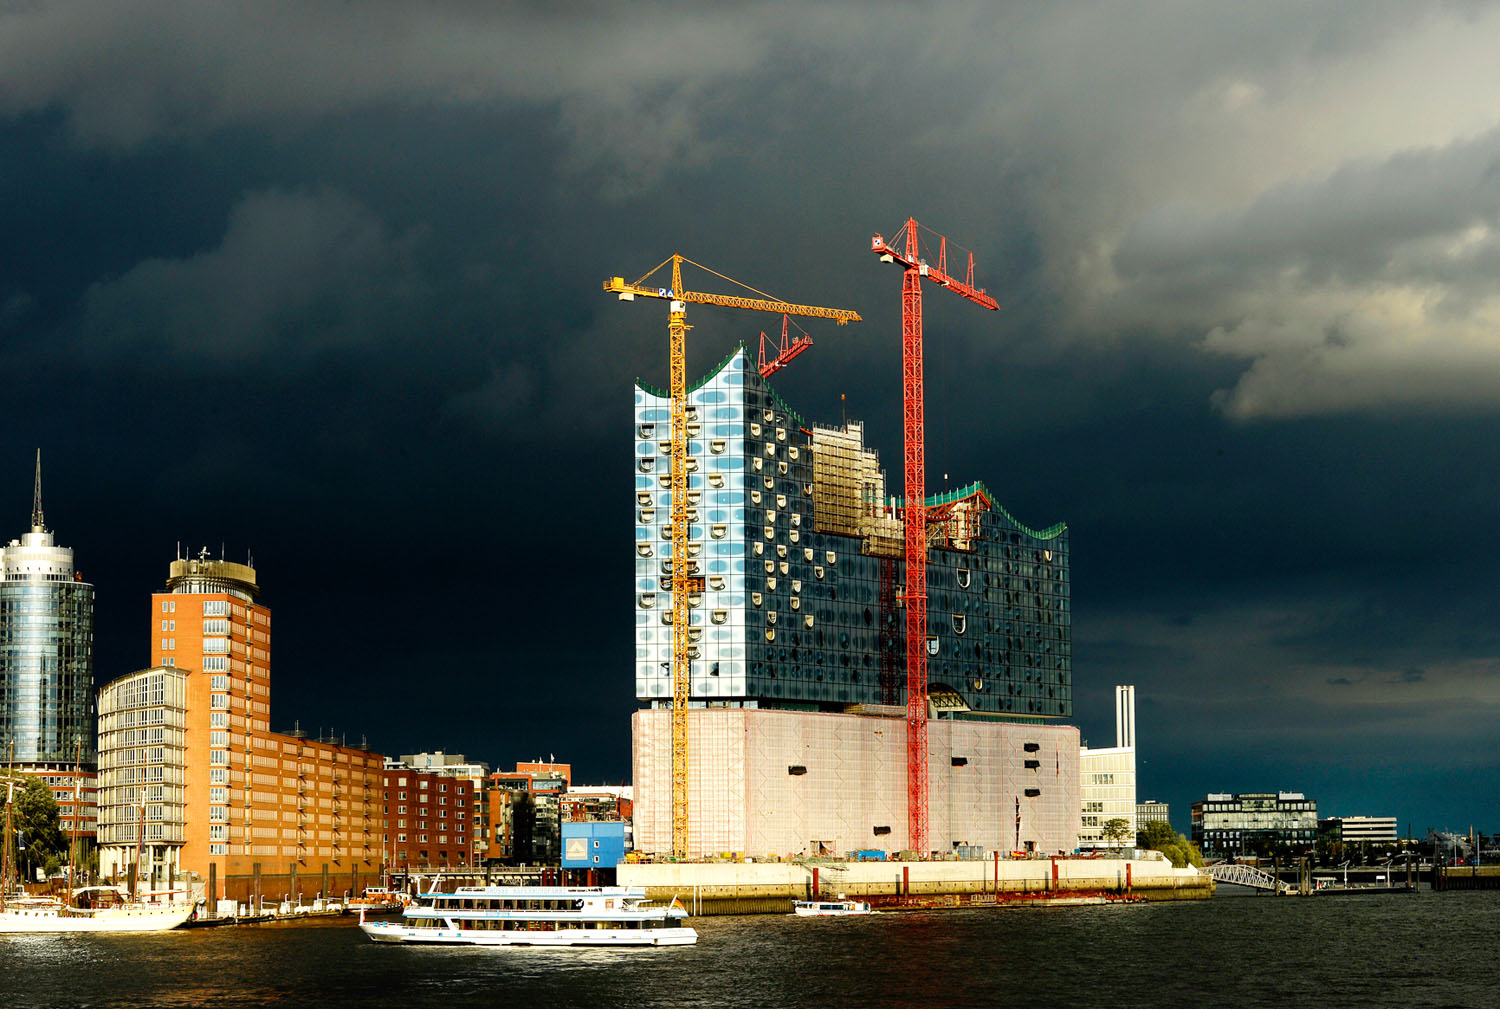 Hamburg új jelképét egy régi raktárra építik rá, de az alig bírja el a politikusi álmokat